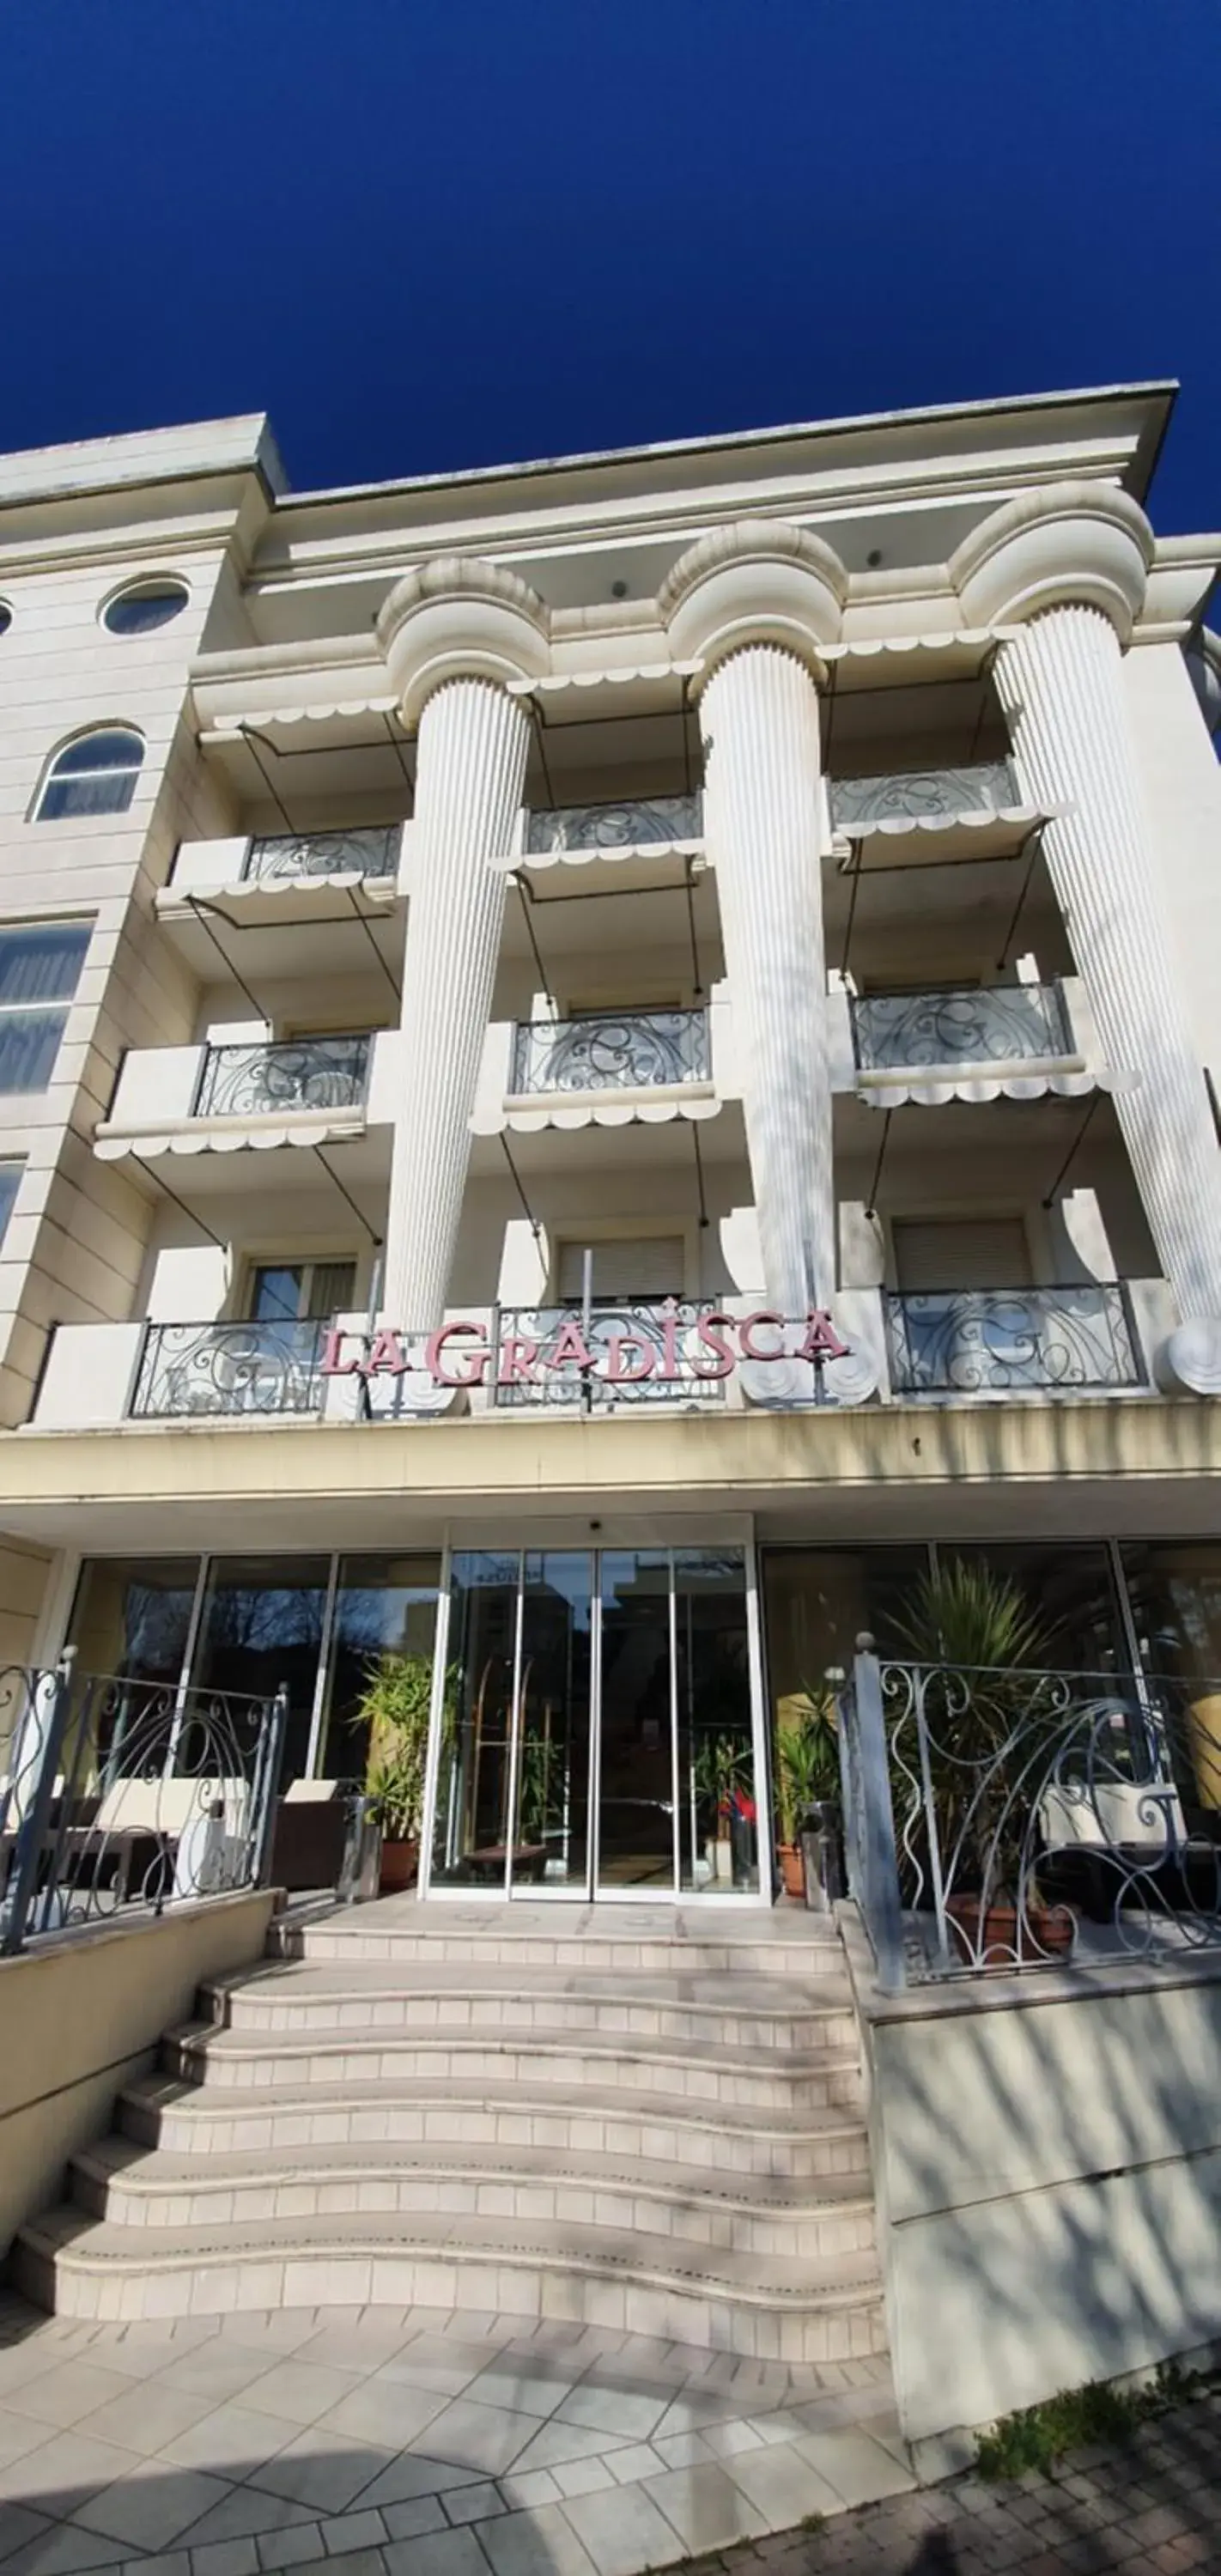 Facade/entrance, Property Building in Hotel La Gradisca